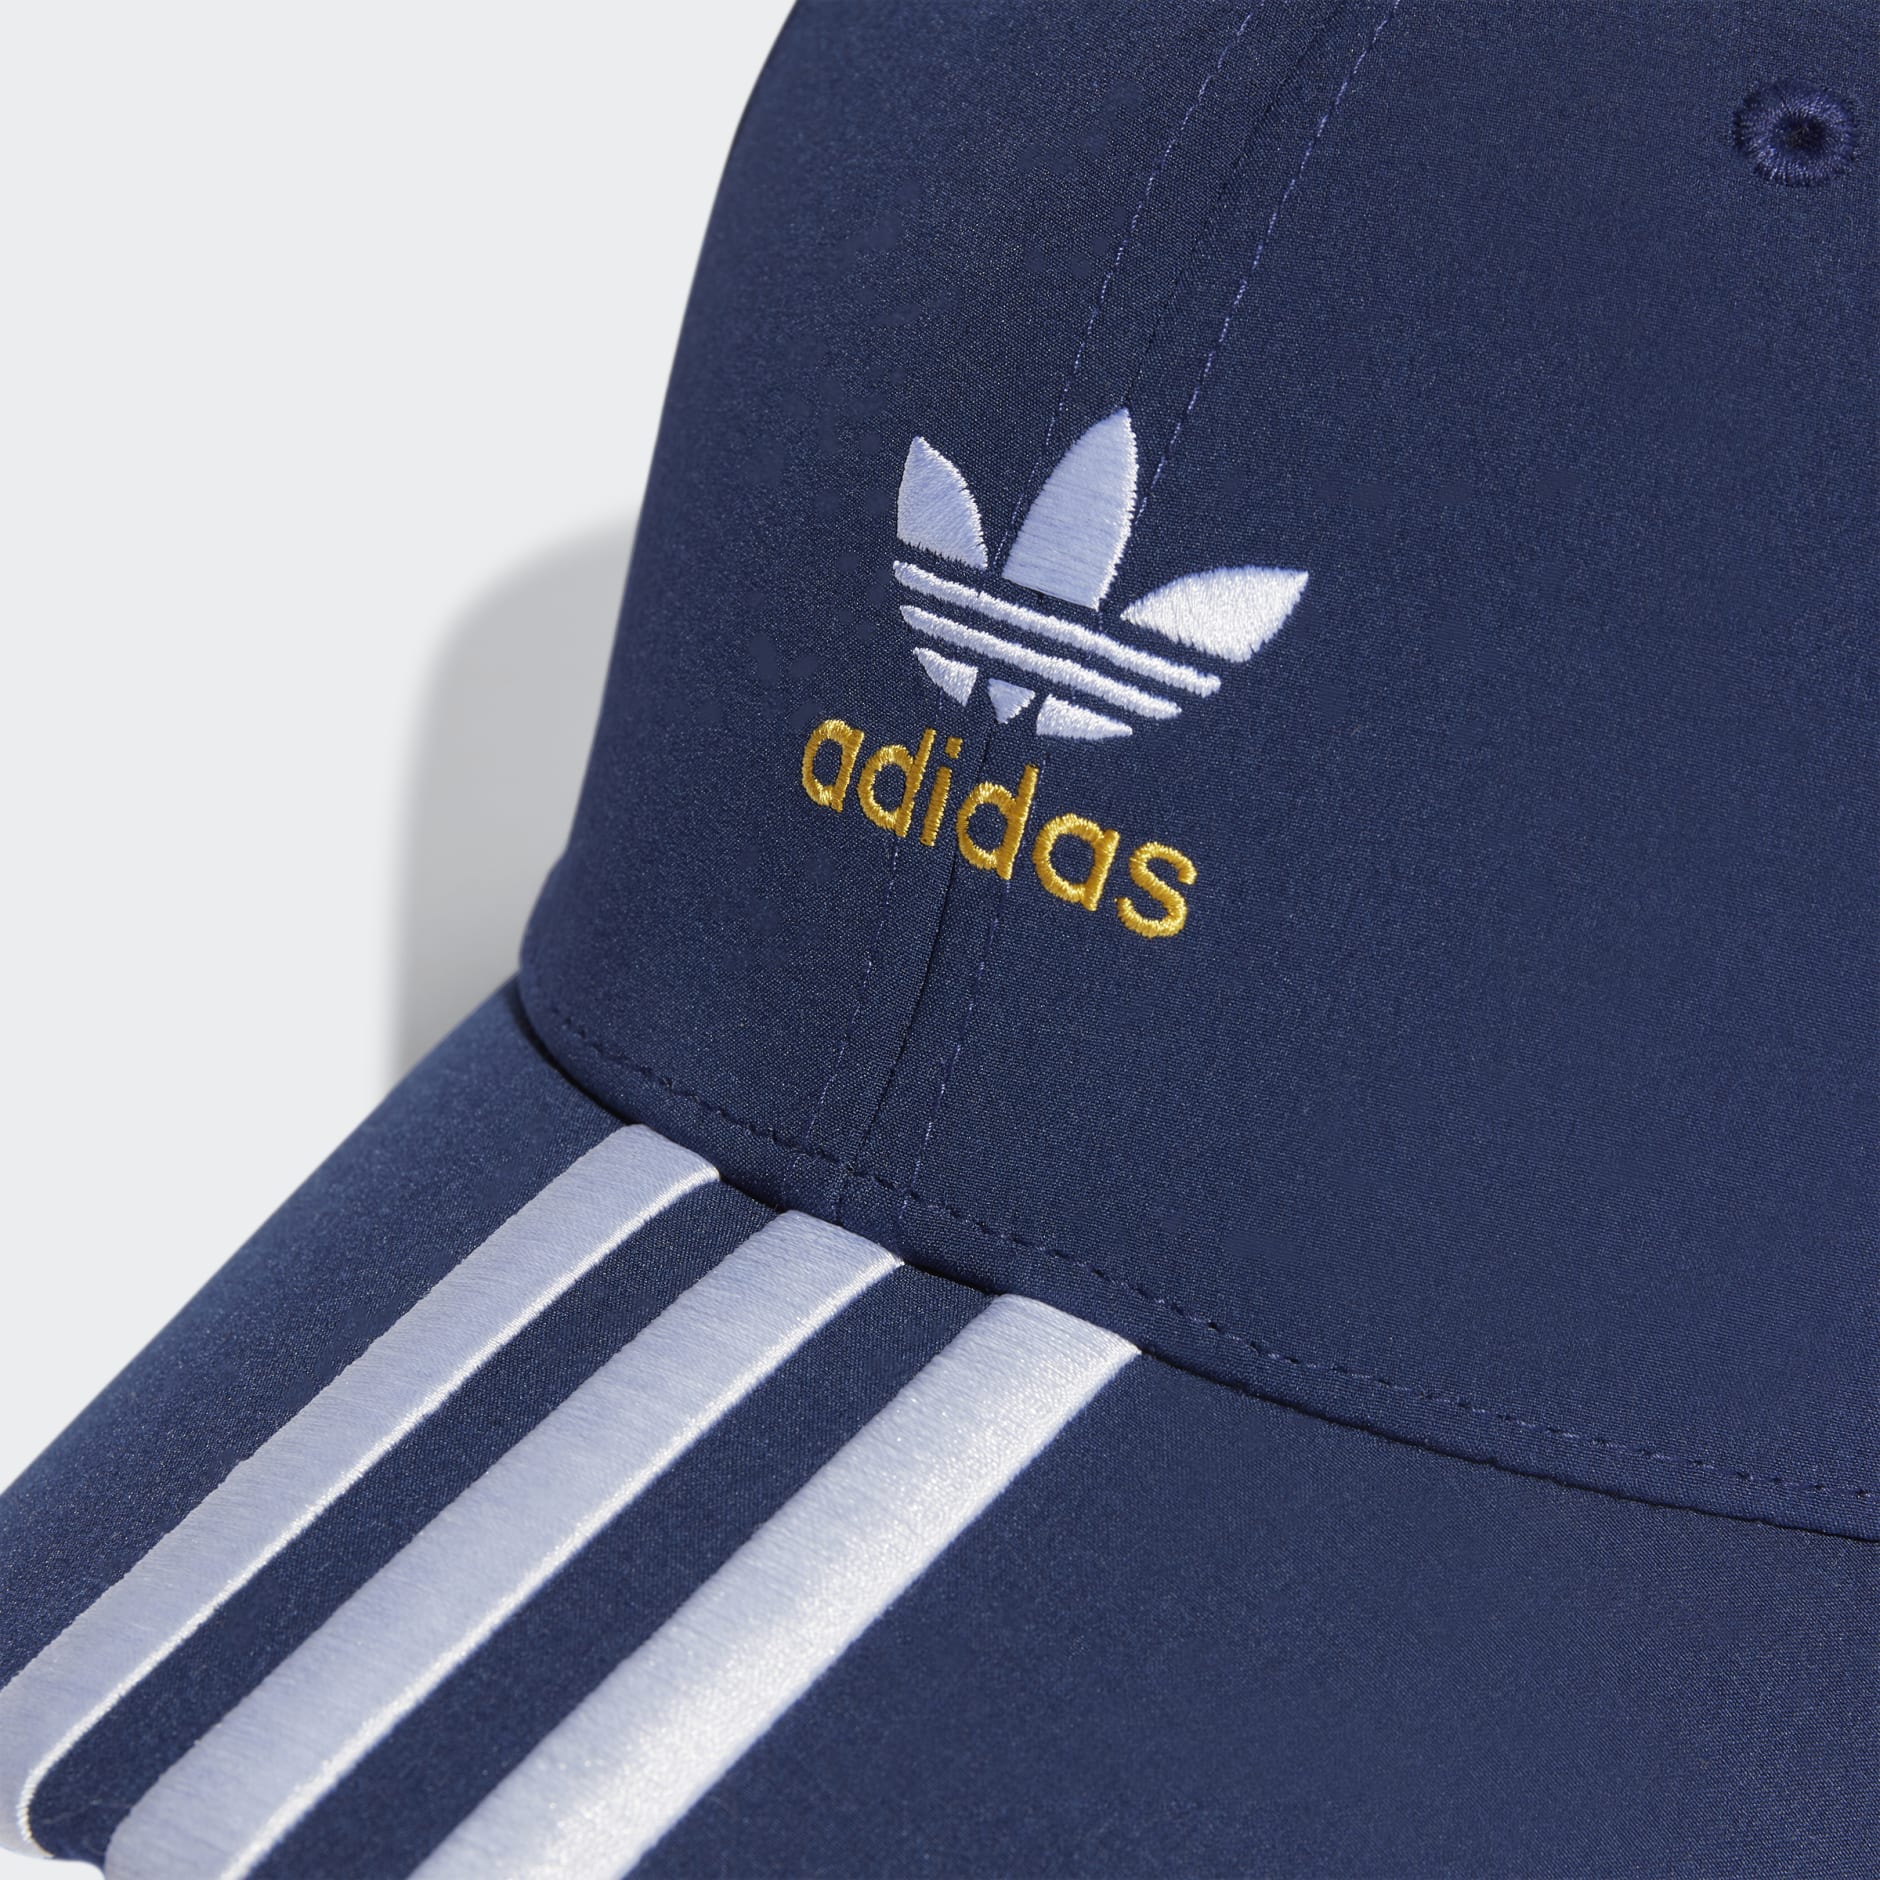 Adidas Sports Hat Black Athletic Cap Adjustable Cap c… - Gem